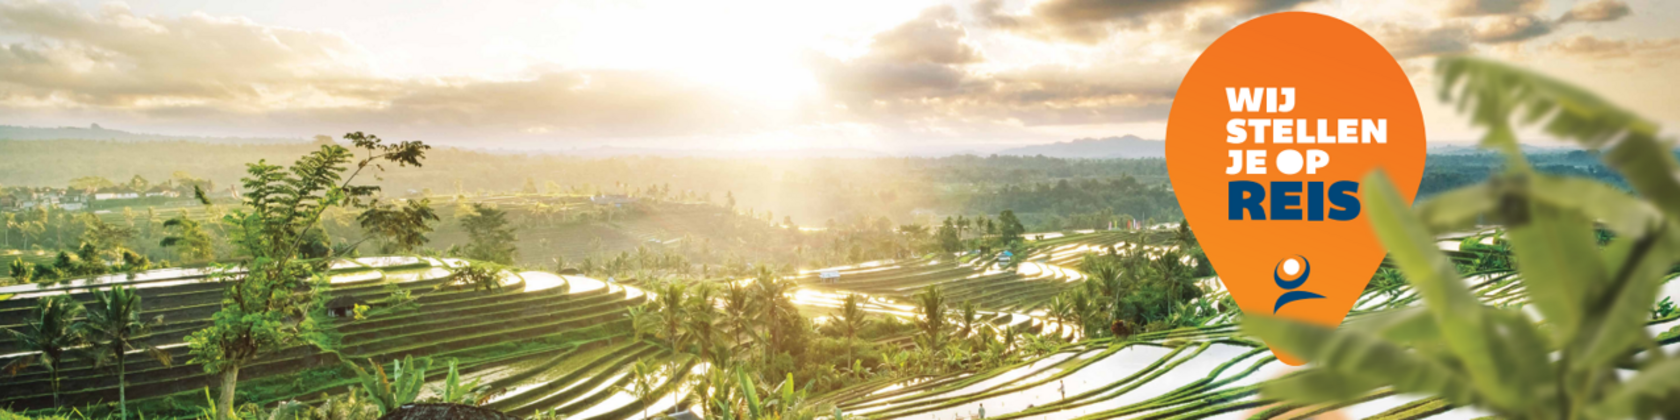 foto van rijstvelden met tekst we stellen je op reis